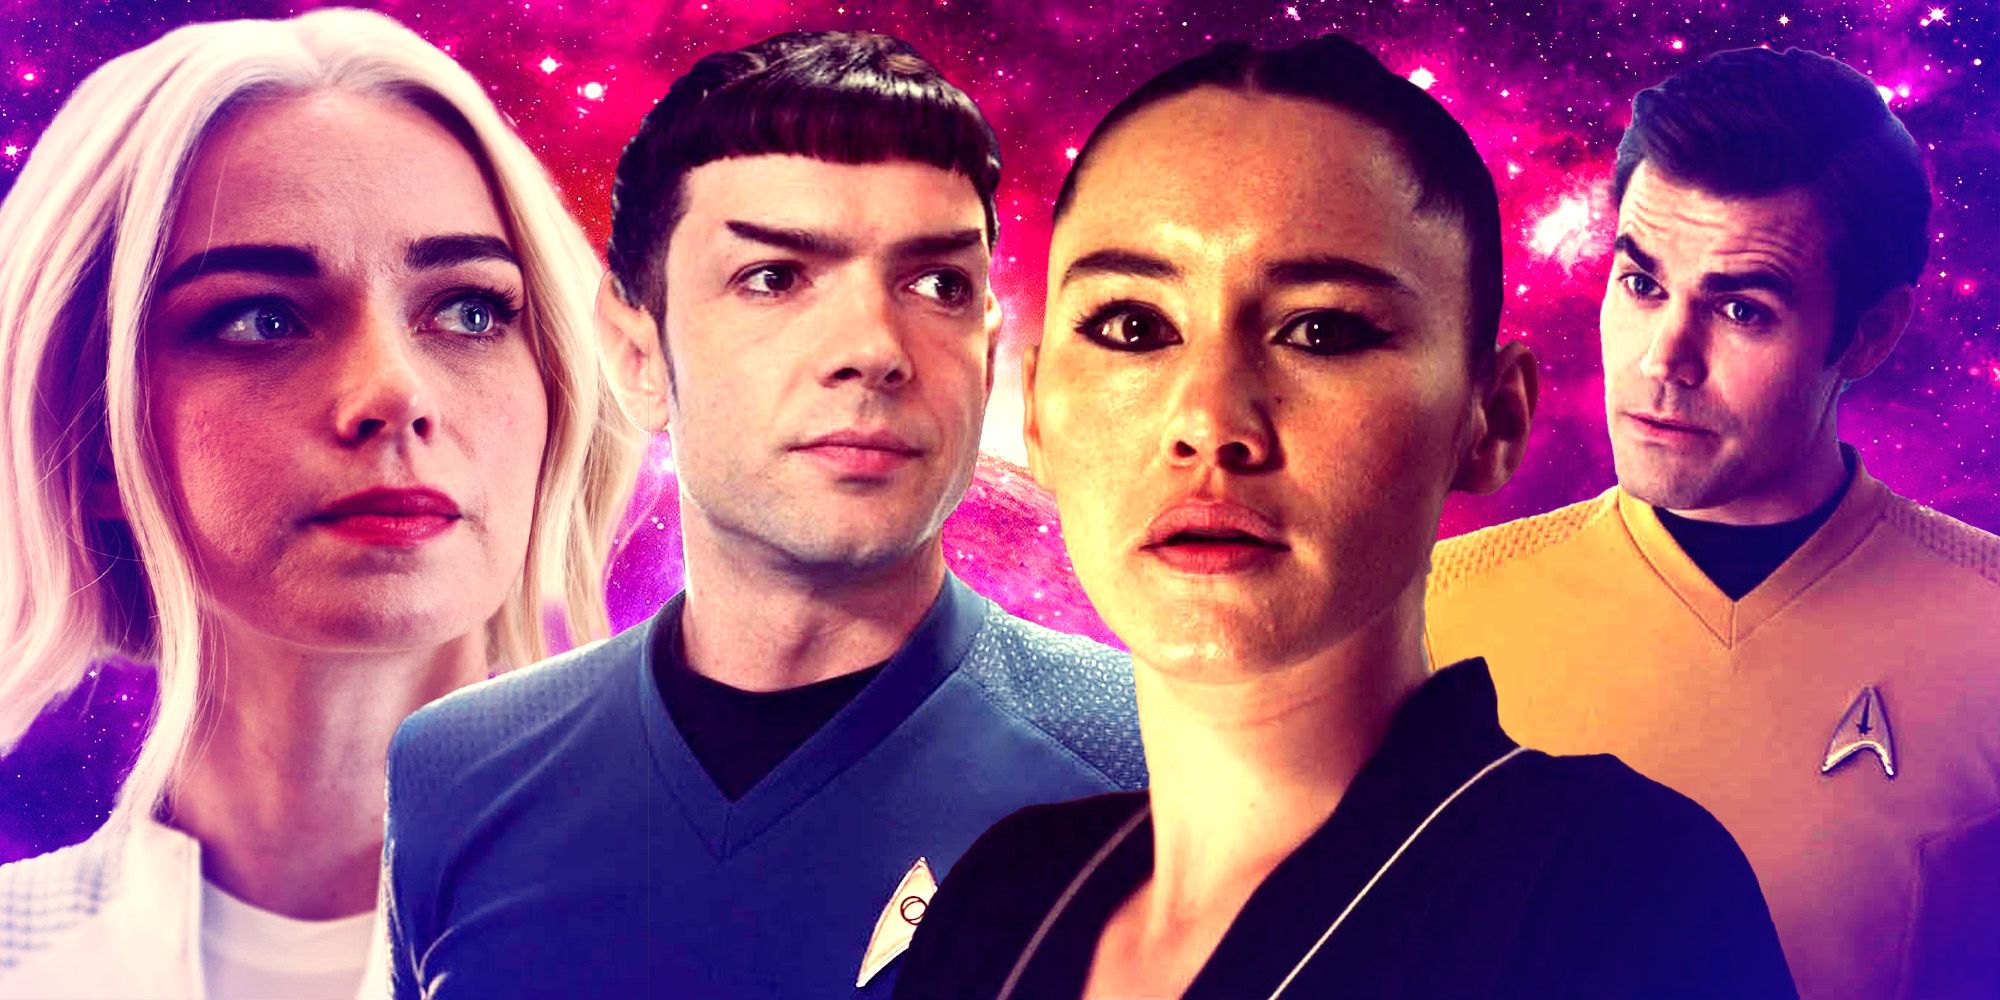 "Historias de relaciones en el espacio": el showrunner de Strange New Worlds revela el secreto del éxito del programa de Star Trek